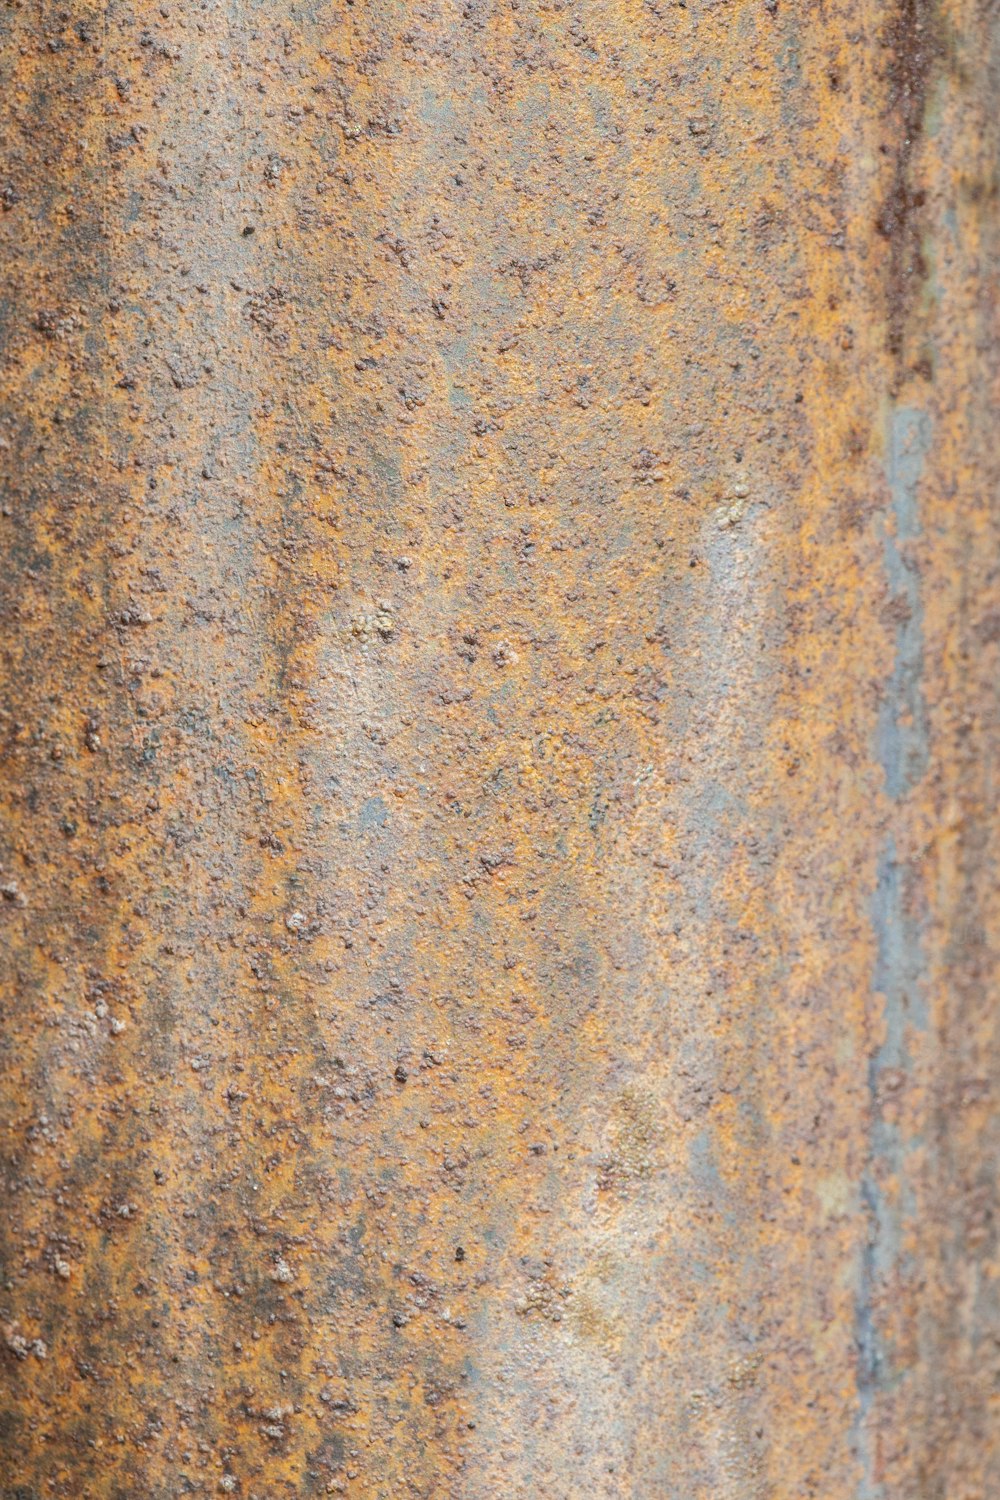 una vieja superficie de metal oxidado con algo de óxido